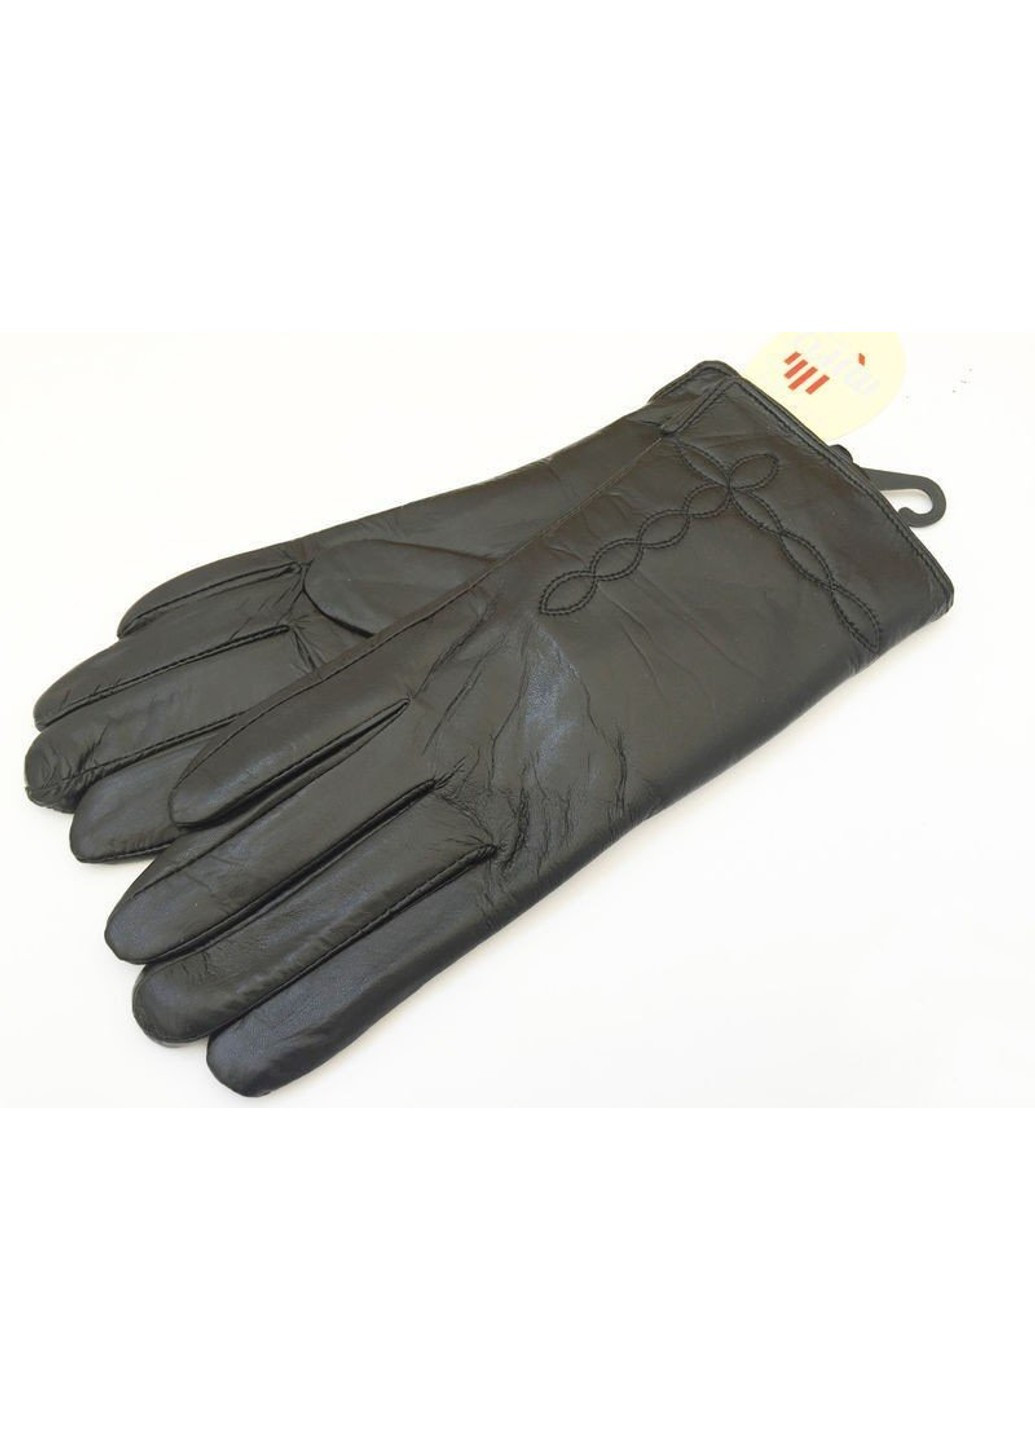 Акуратні чорні жіночі рукавички з натуральної шкіри BR-S (261486870)